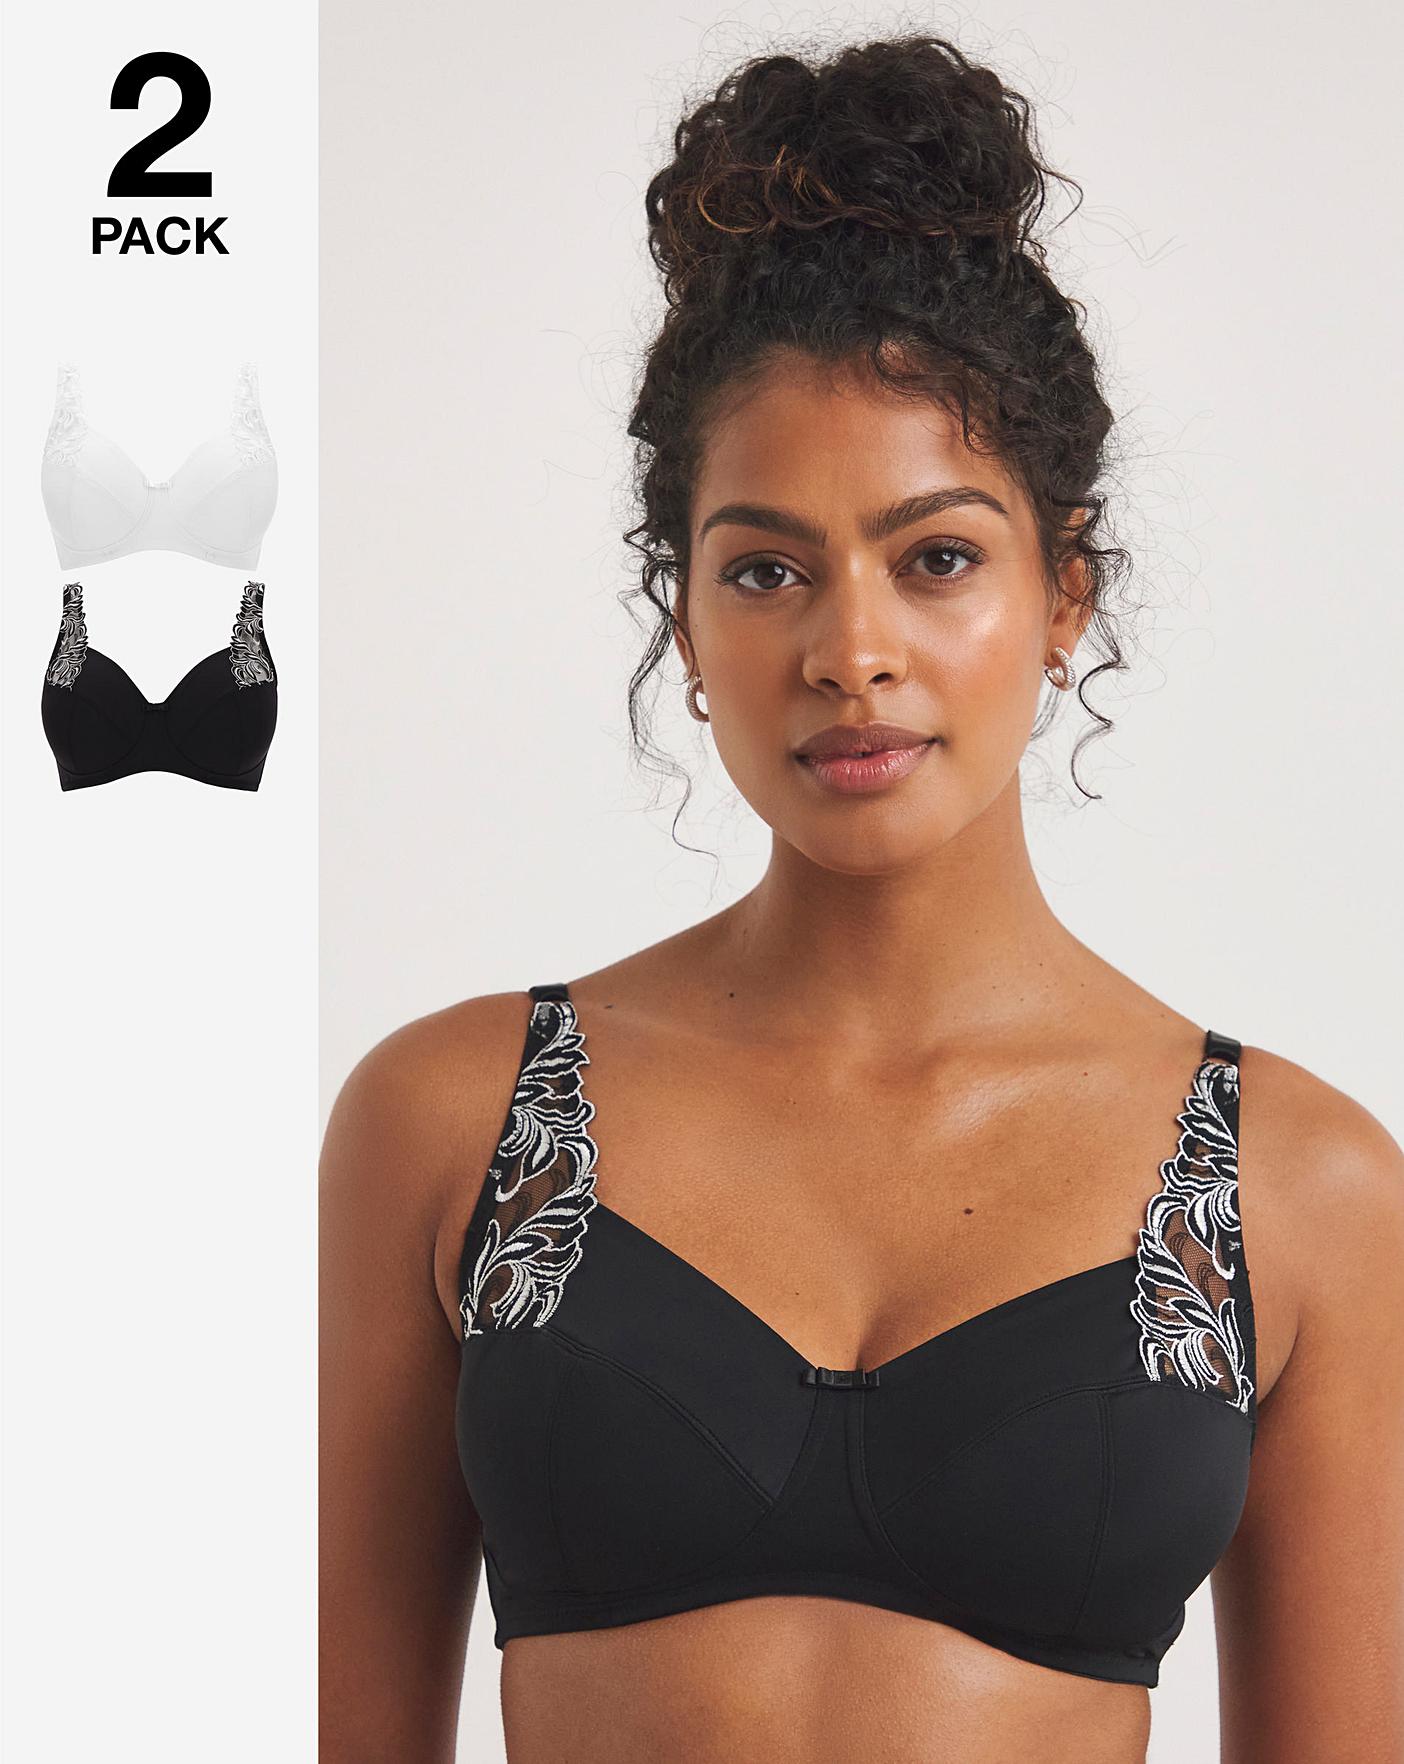 Pack of 2 lace bras - Tops - Bras - UNDERWEAR